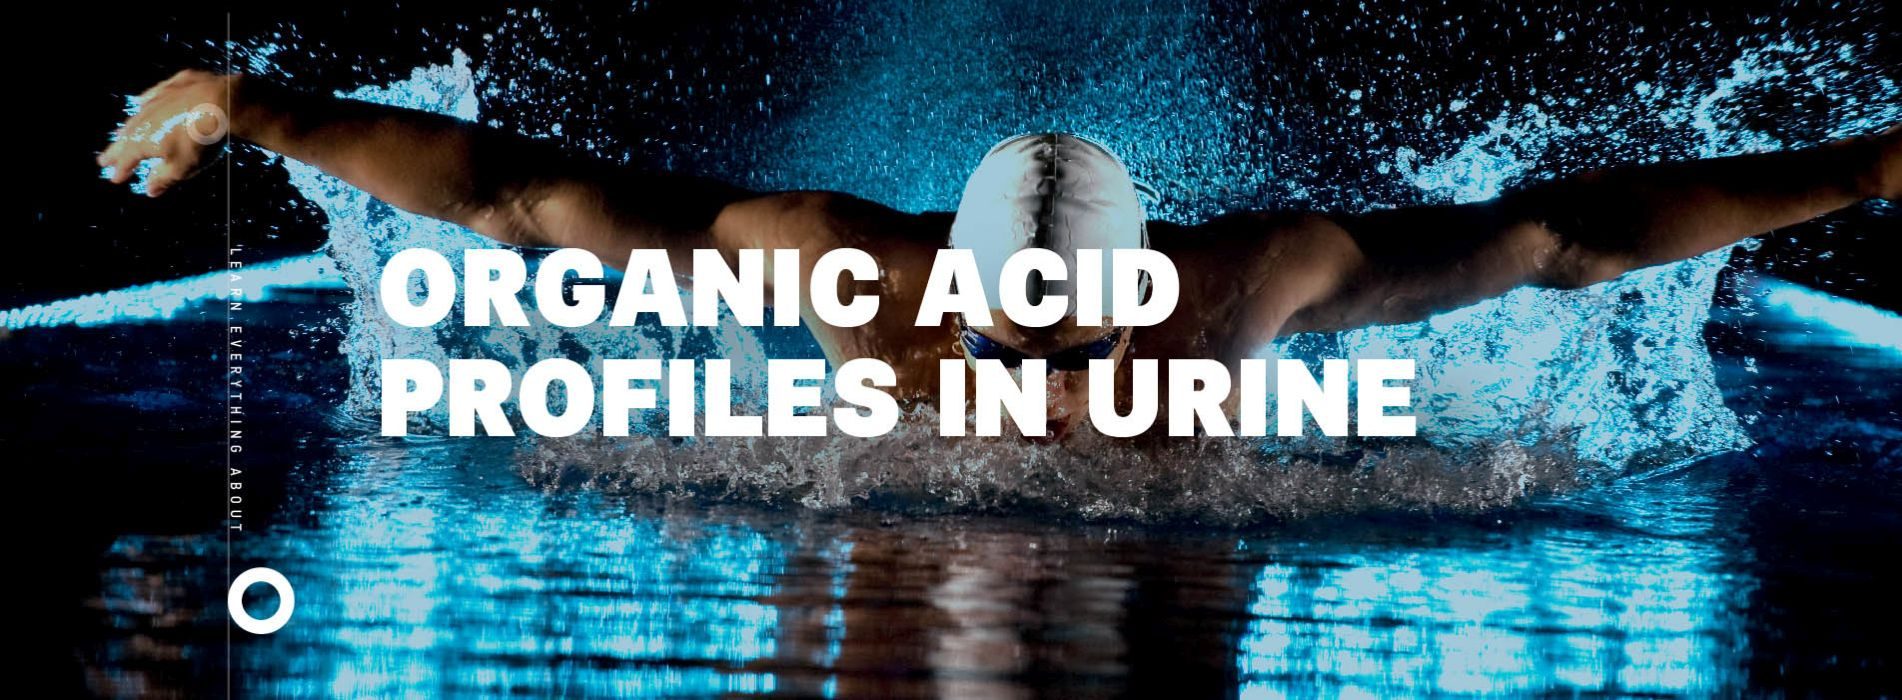 Organic acid profiles in urine